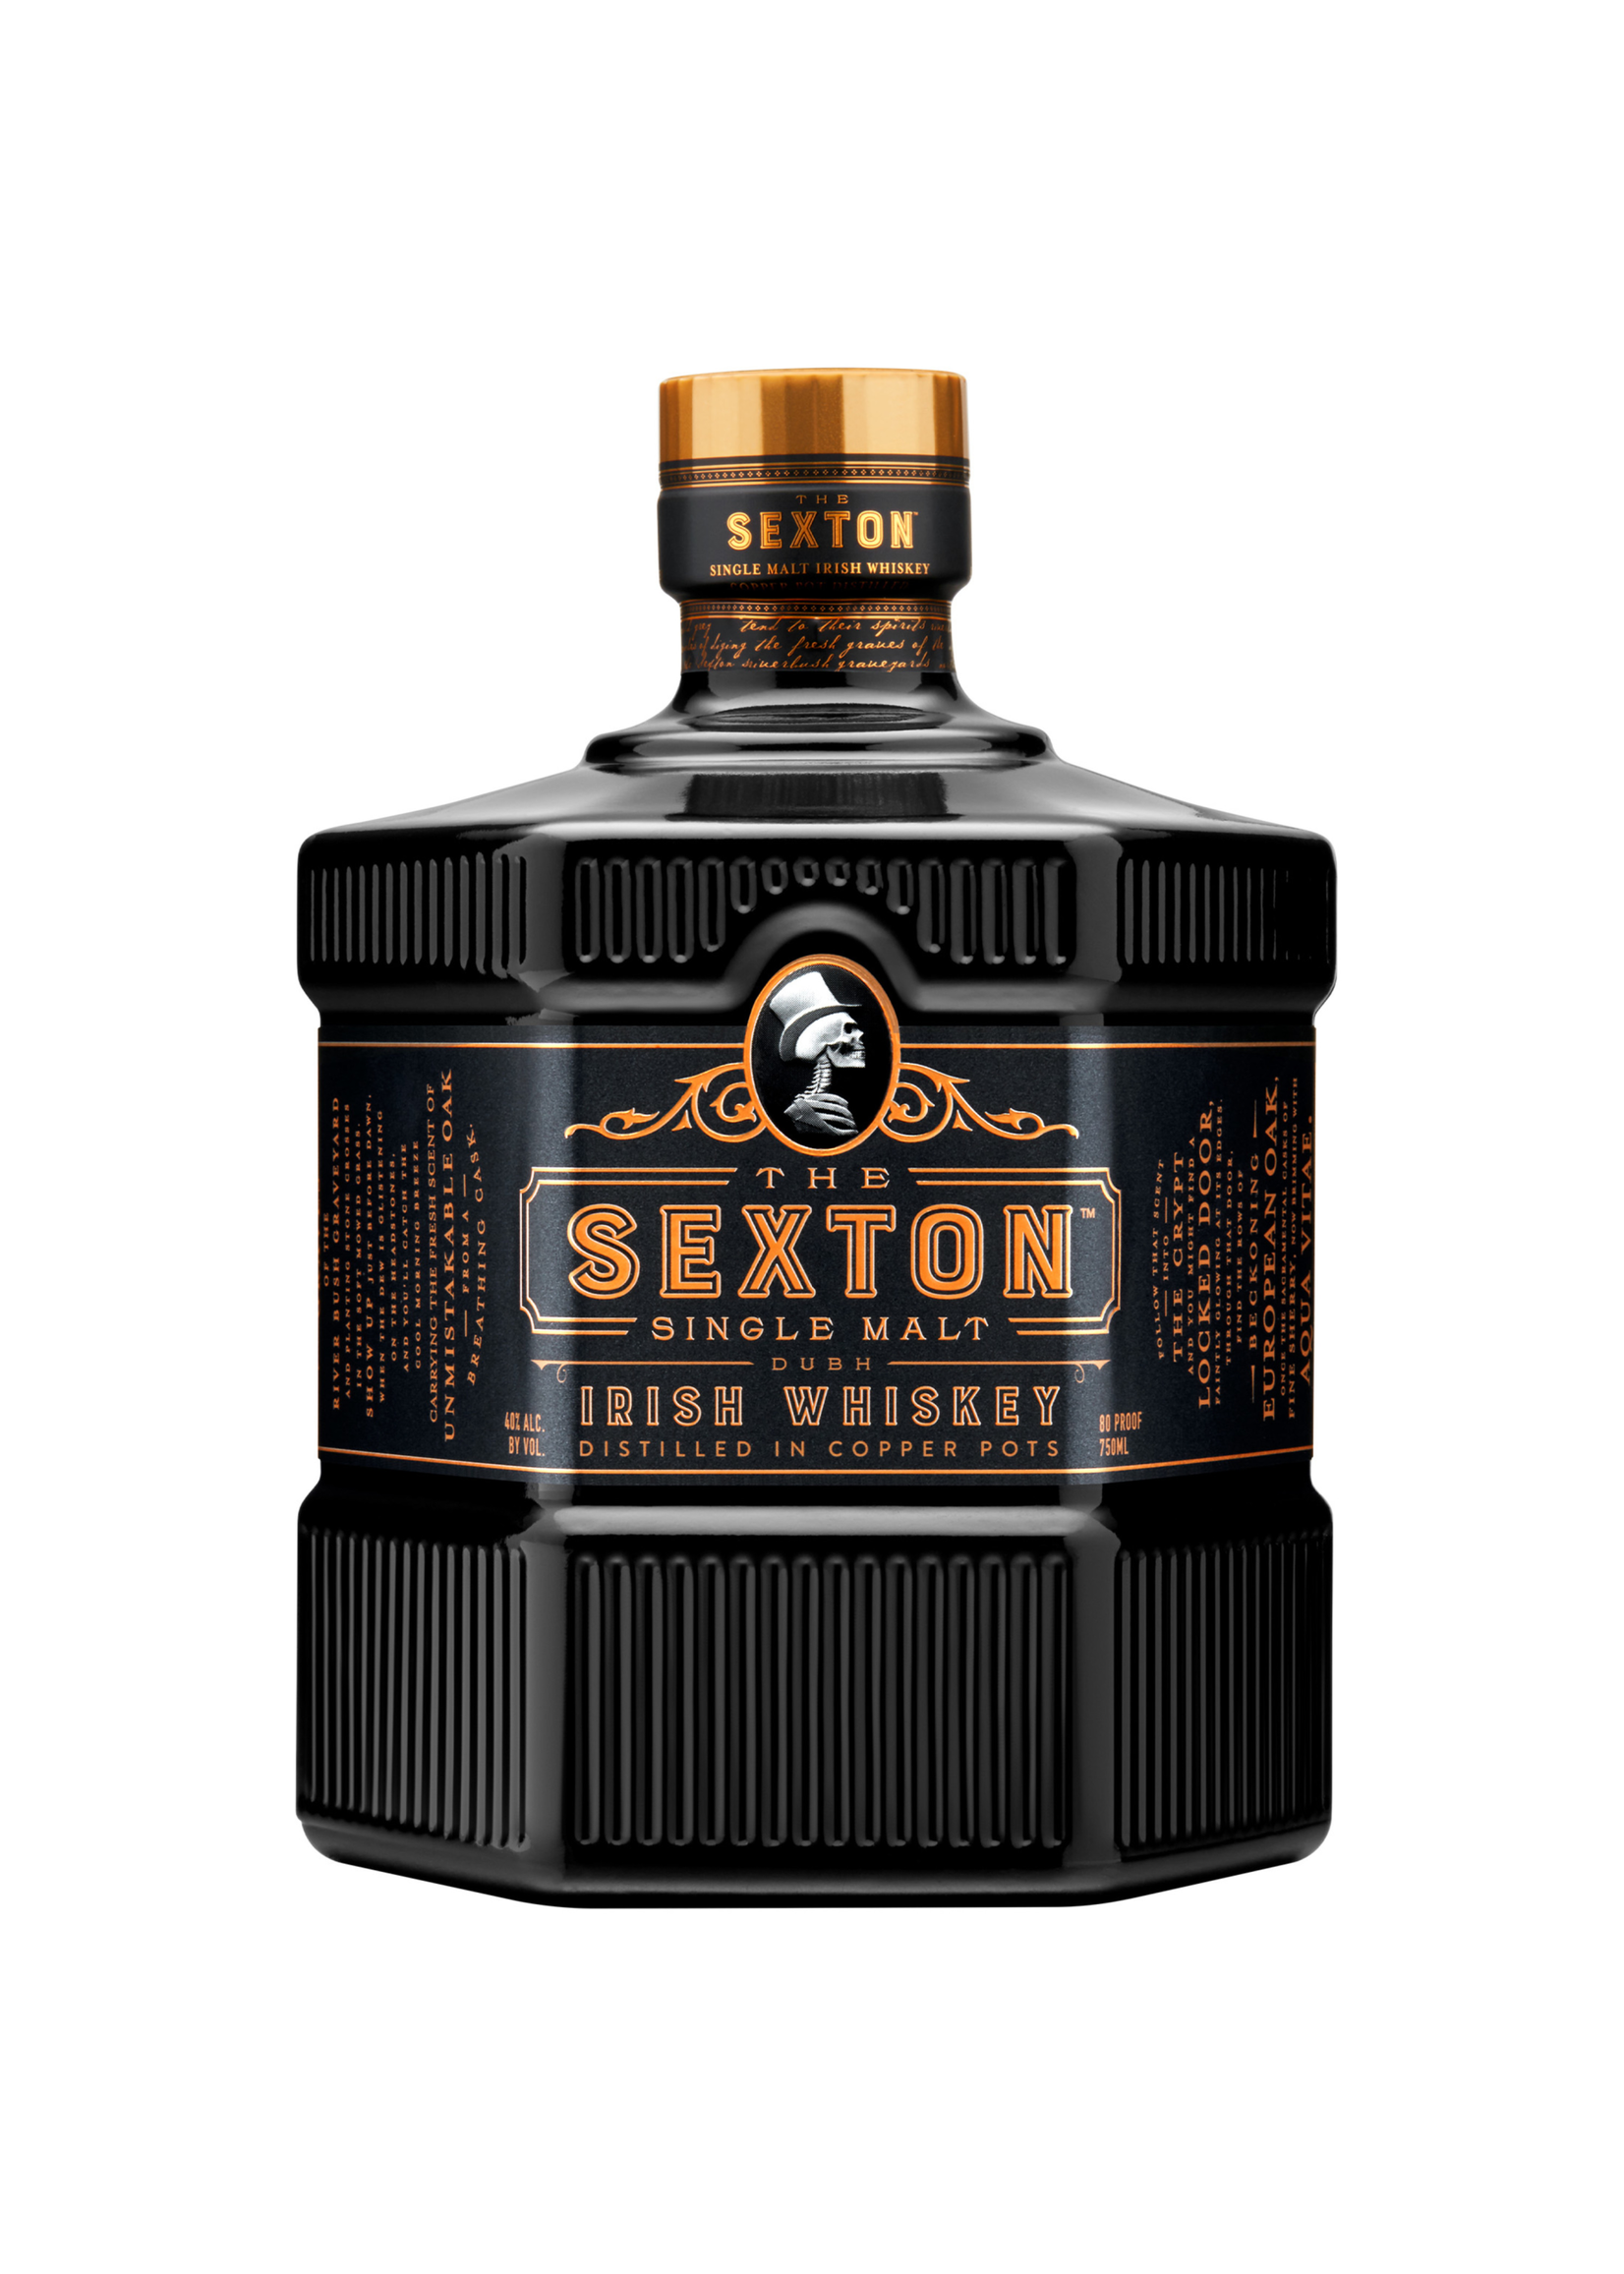 The Sexton Single Malt Irish Whiskey 80Proof 750ml